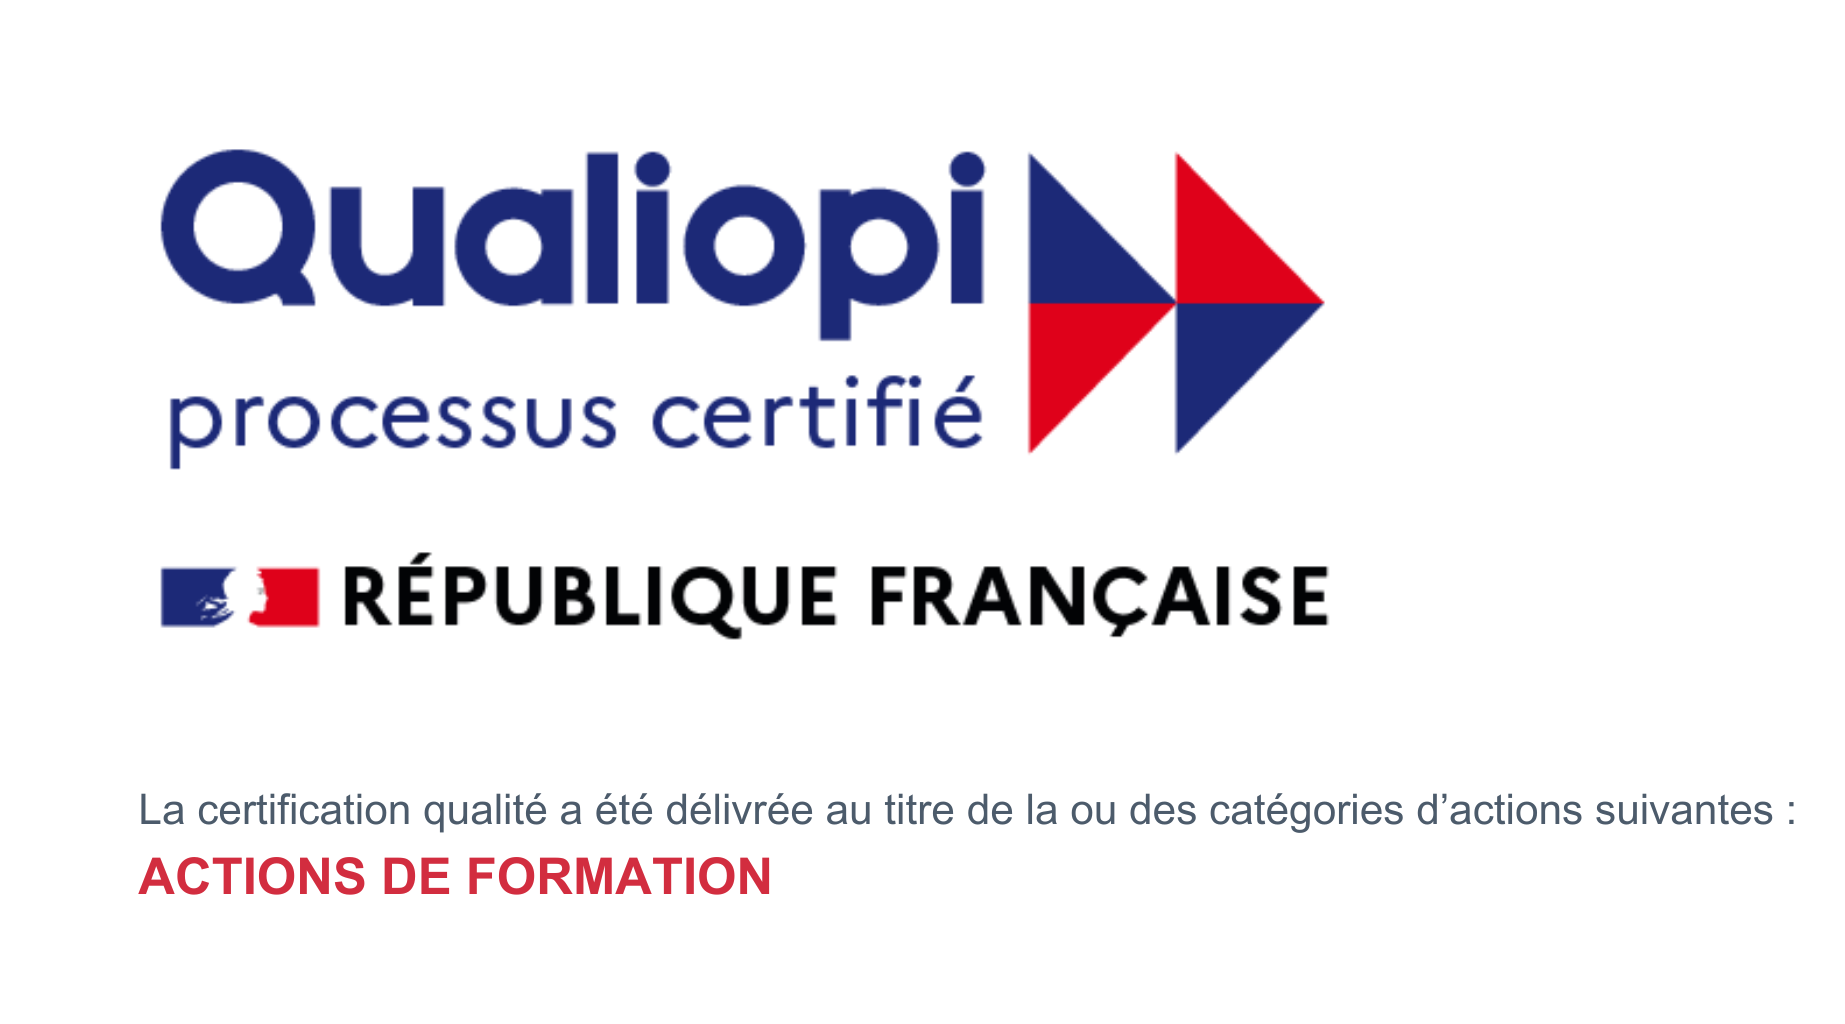 Certification Qualiopi Sens et Compétences